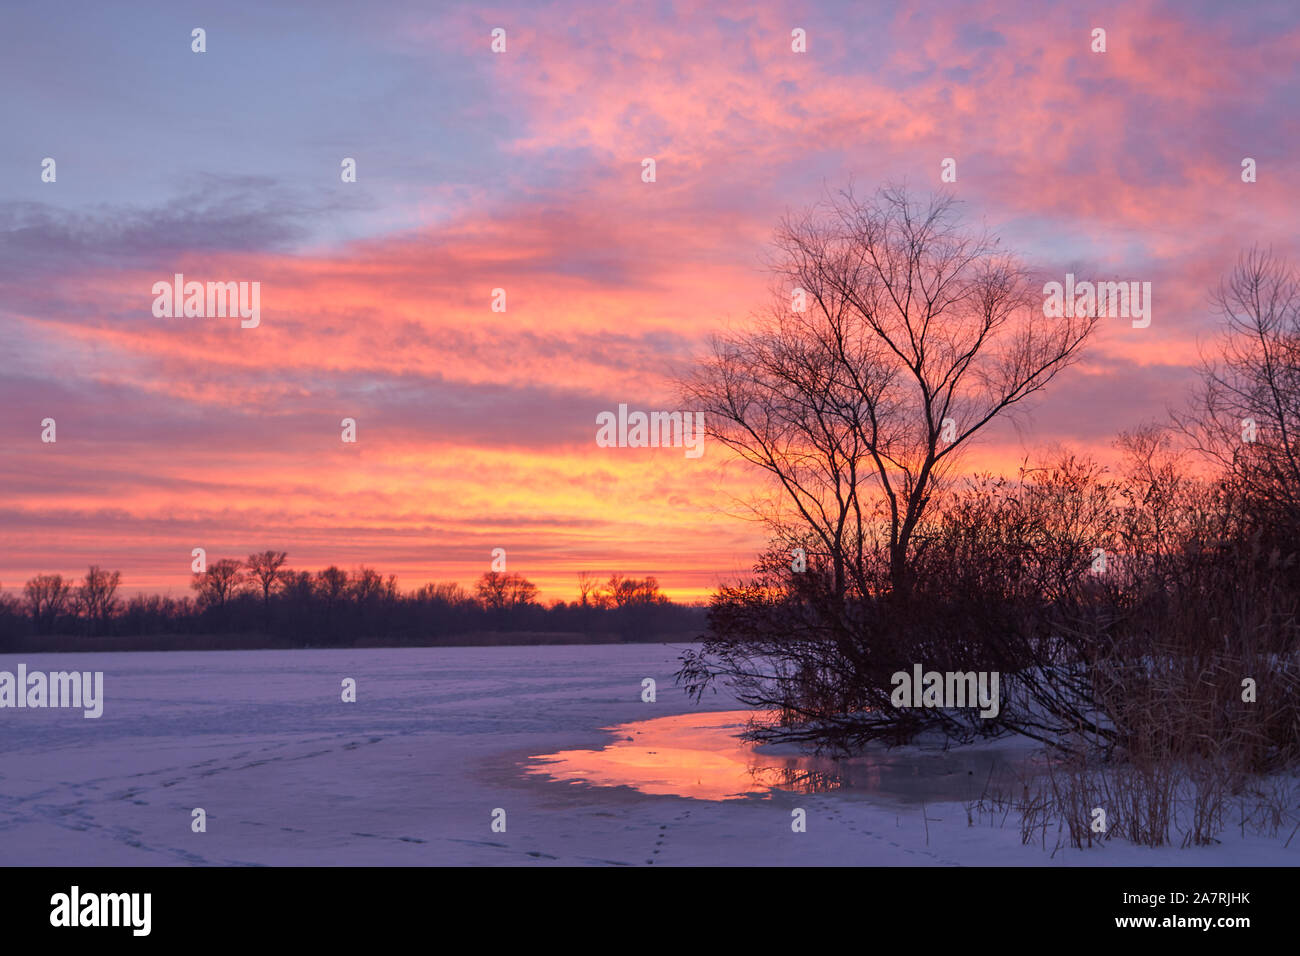 Invierno atardecer sobre el río congelado de púrpura y rosa las nubes en el cielo azul. Silueta de árbol y descongelados parche en un primer plano Foto de stock